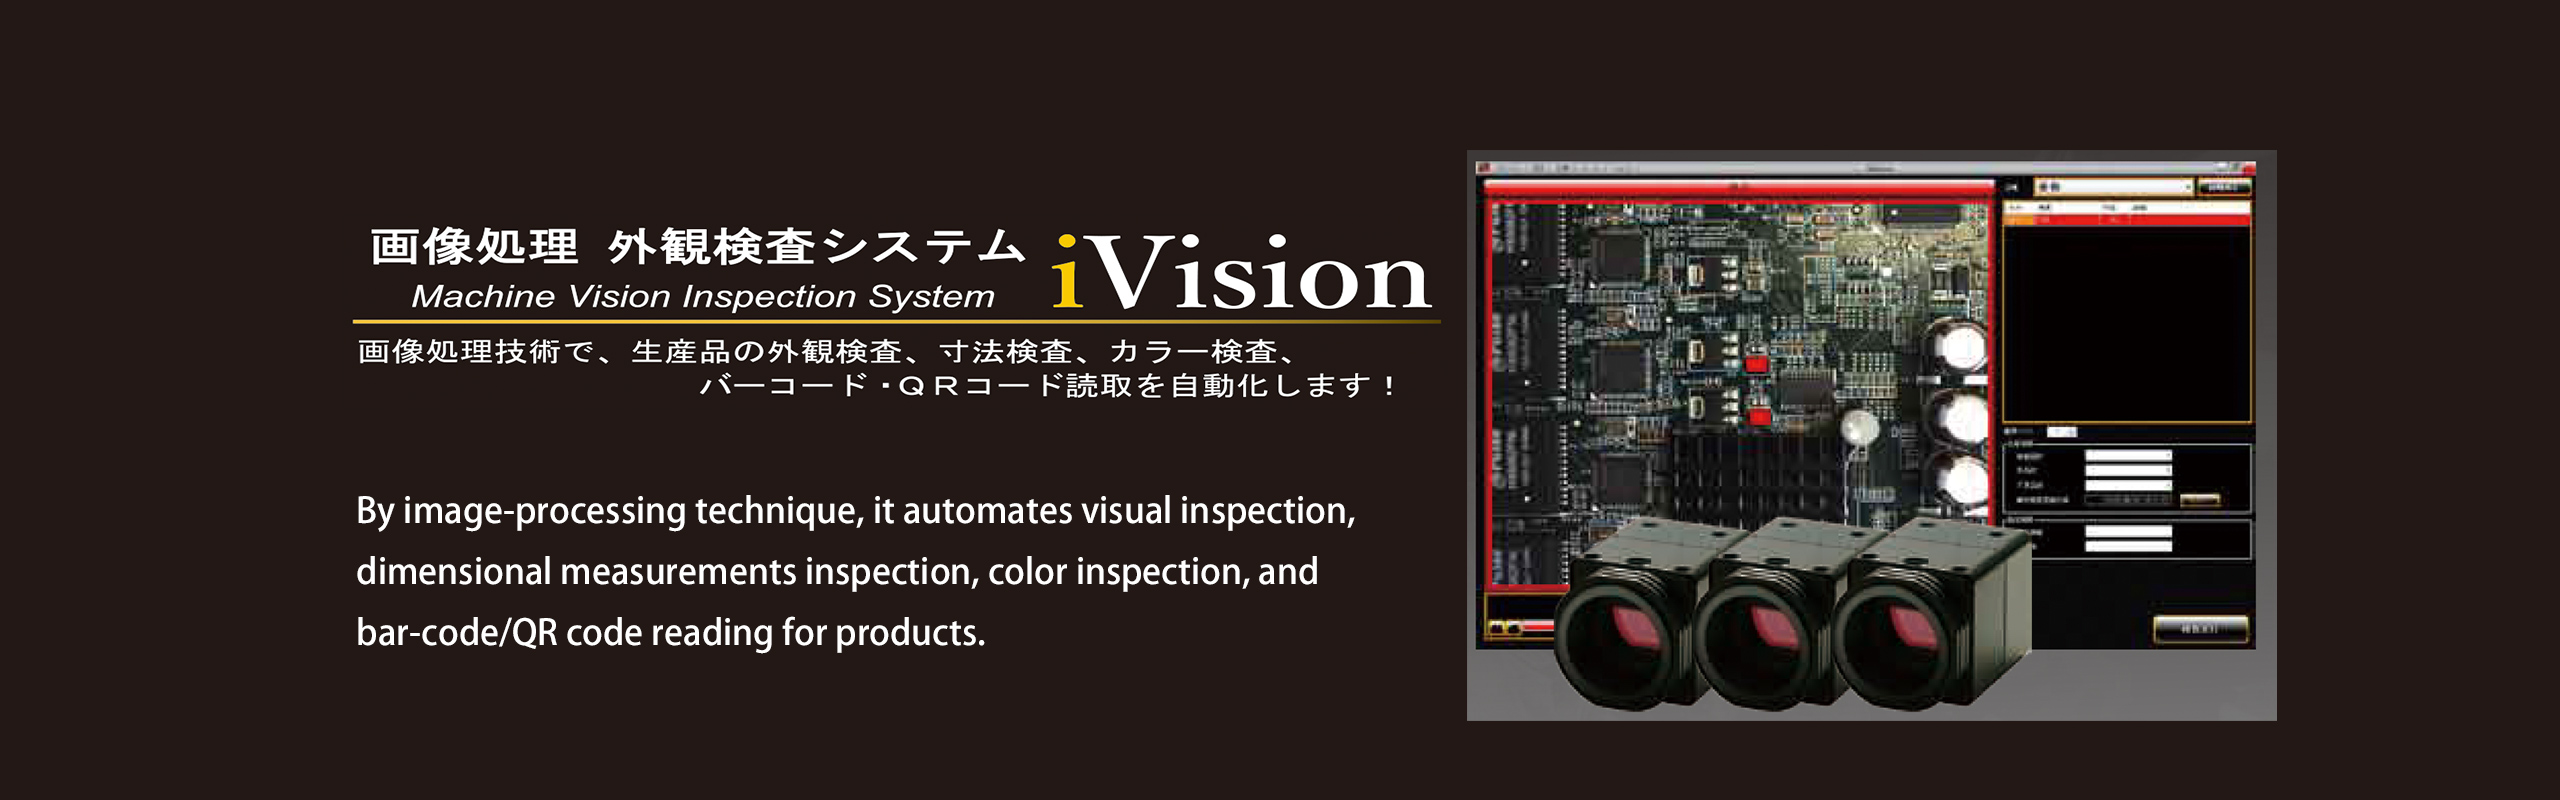 画像処理 外観検査システム iVision